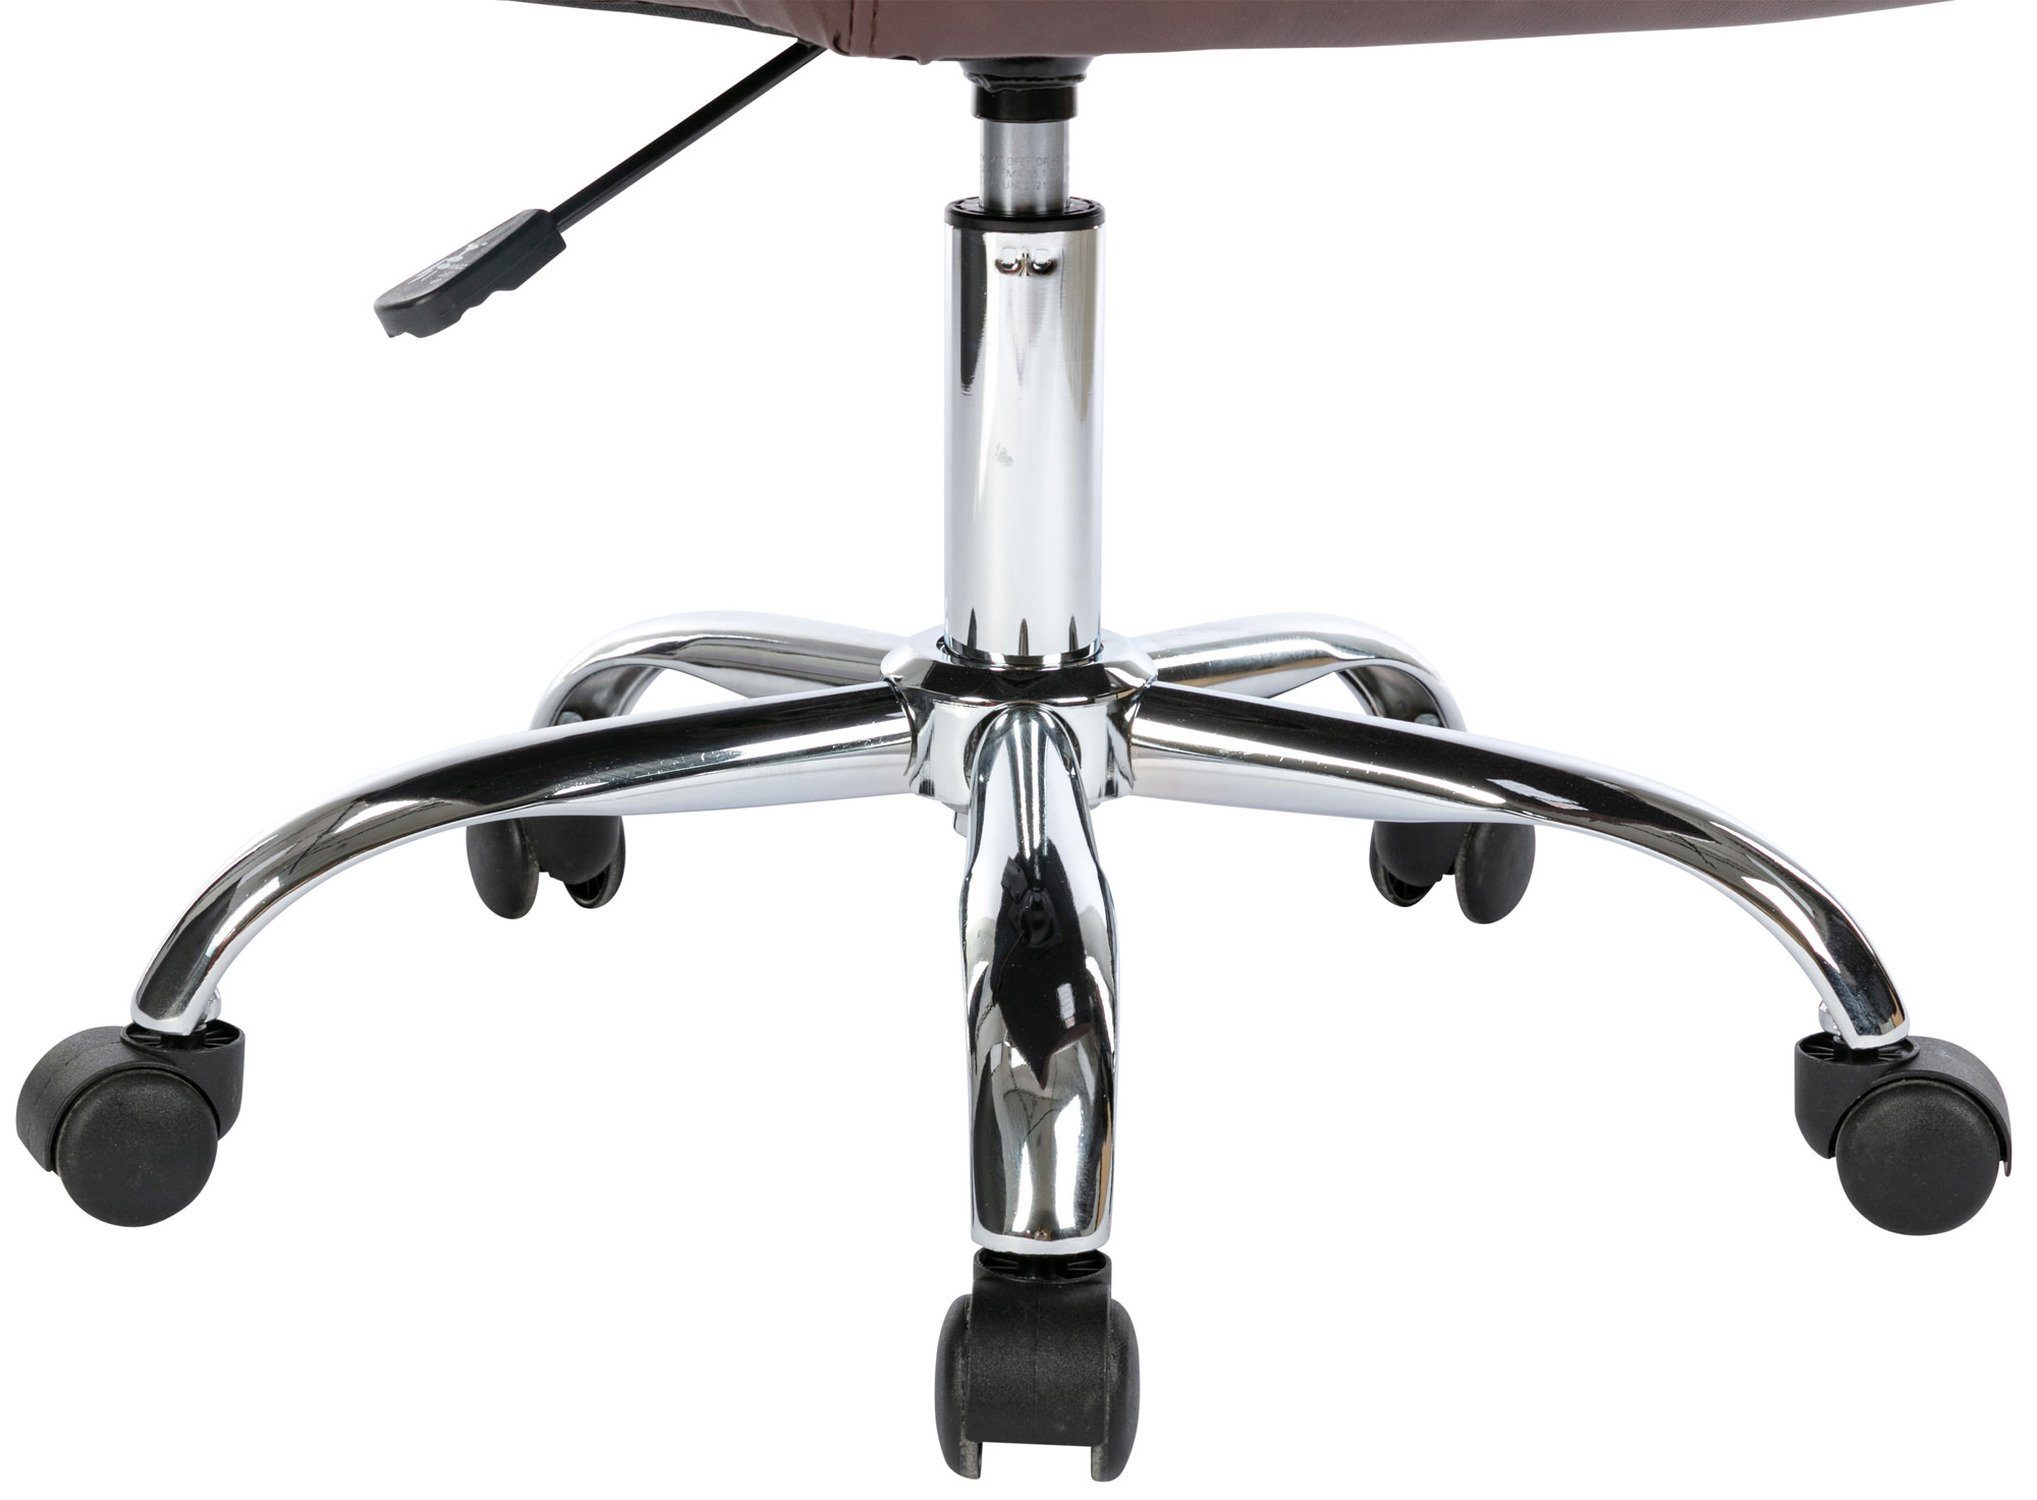 TPFLiving bequemer V1 Gestell: Rückenlehne 360° XXL), mit Sitzfläche: höhenverstellbar (Schreibtischstuhl, Kunstleder - und chrom Bürostuhl bordeauxrot - Deal Drehstuhl, Chefsessel, Metall drehbar Bürostuhl